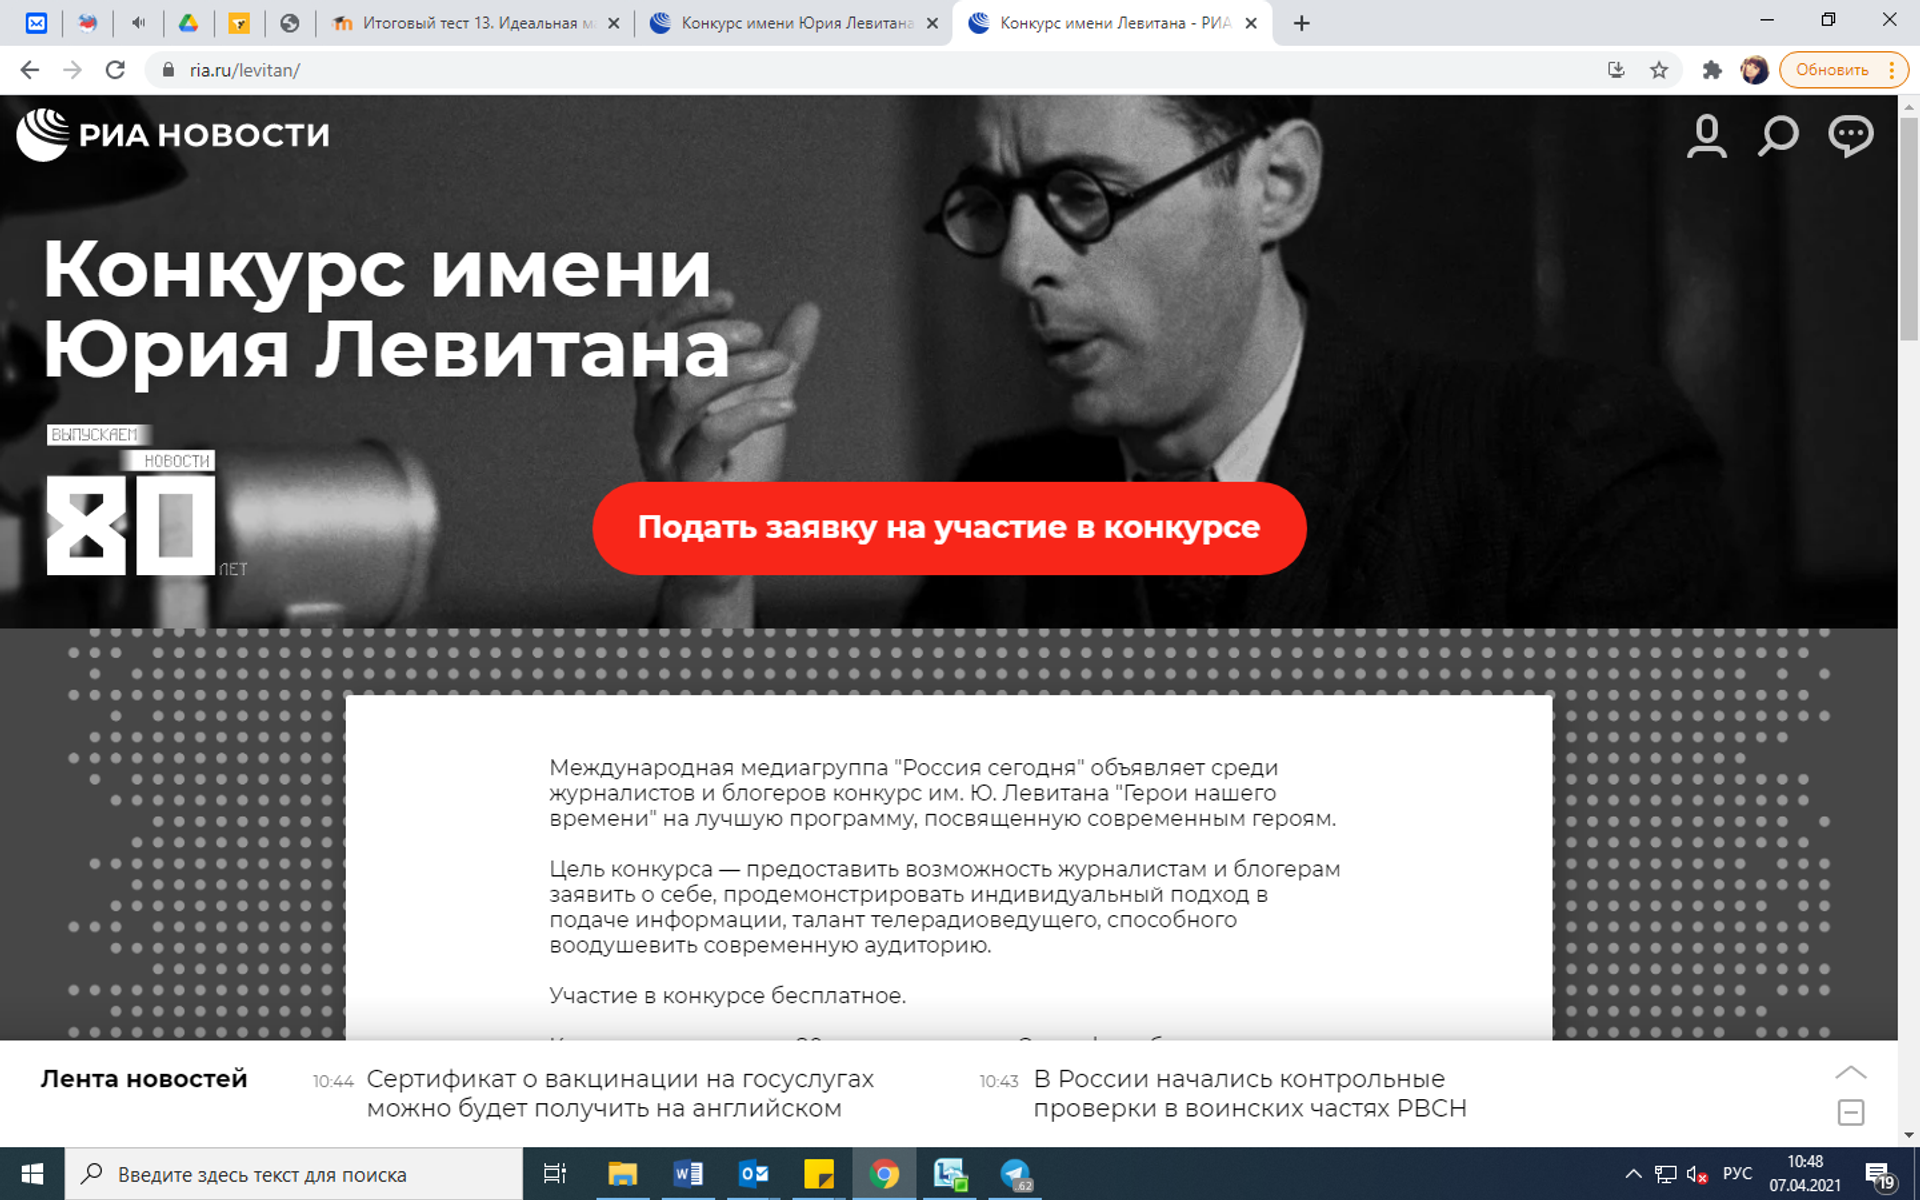 Скриншот страницы конкурса имени Юрия Левитана - Sputnik Узбекистан, 1920, 07.04.2021